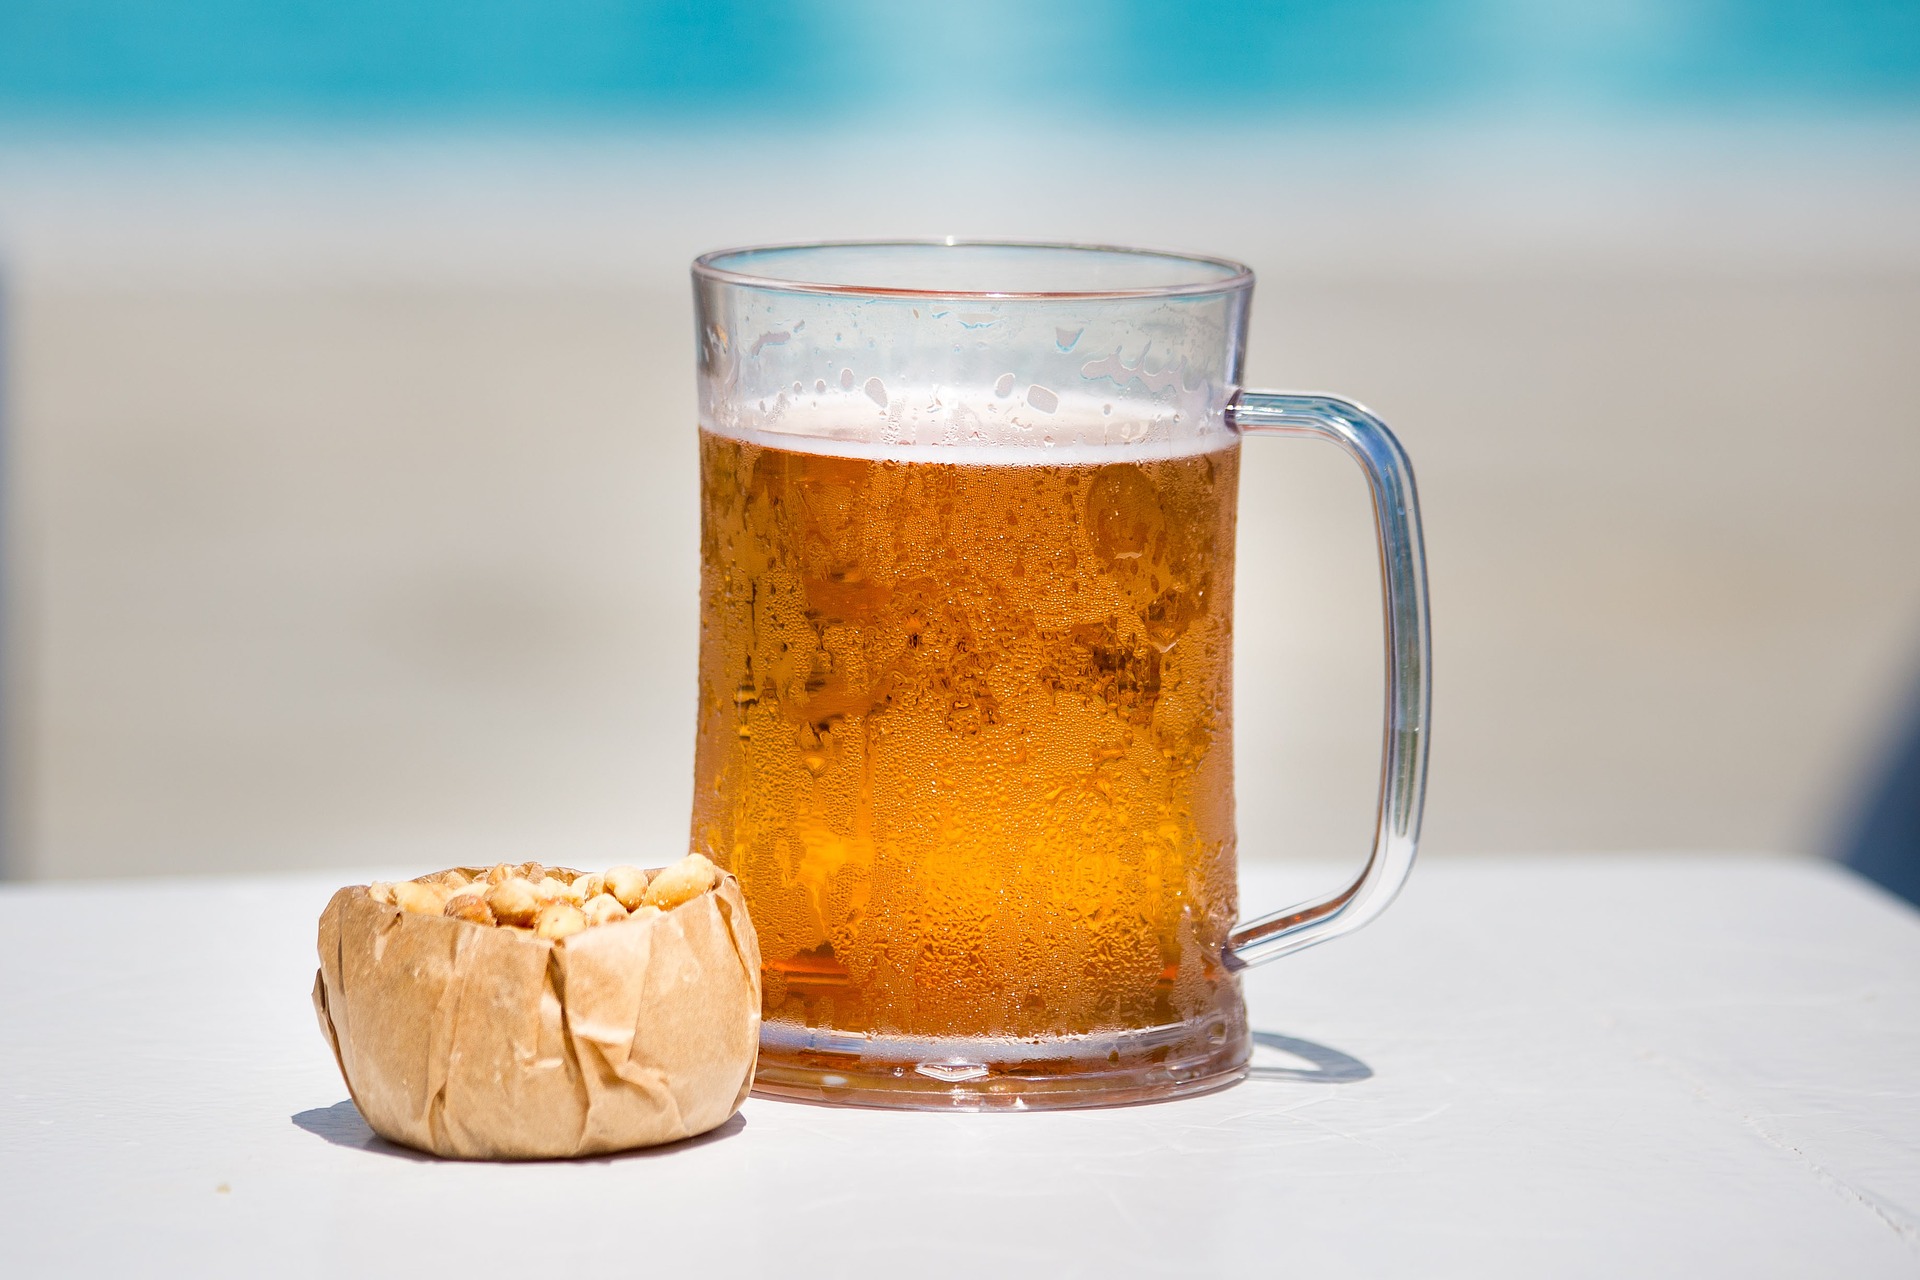 Descubra quais são os estilos de cerveja que mais combinam com o verão